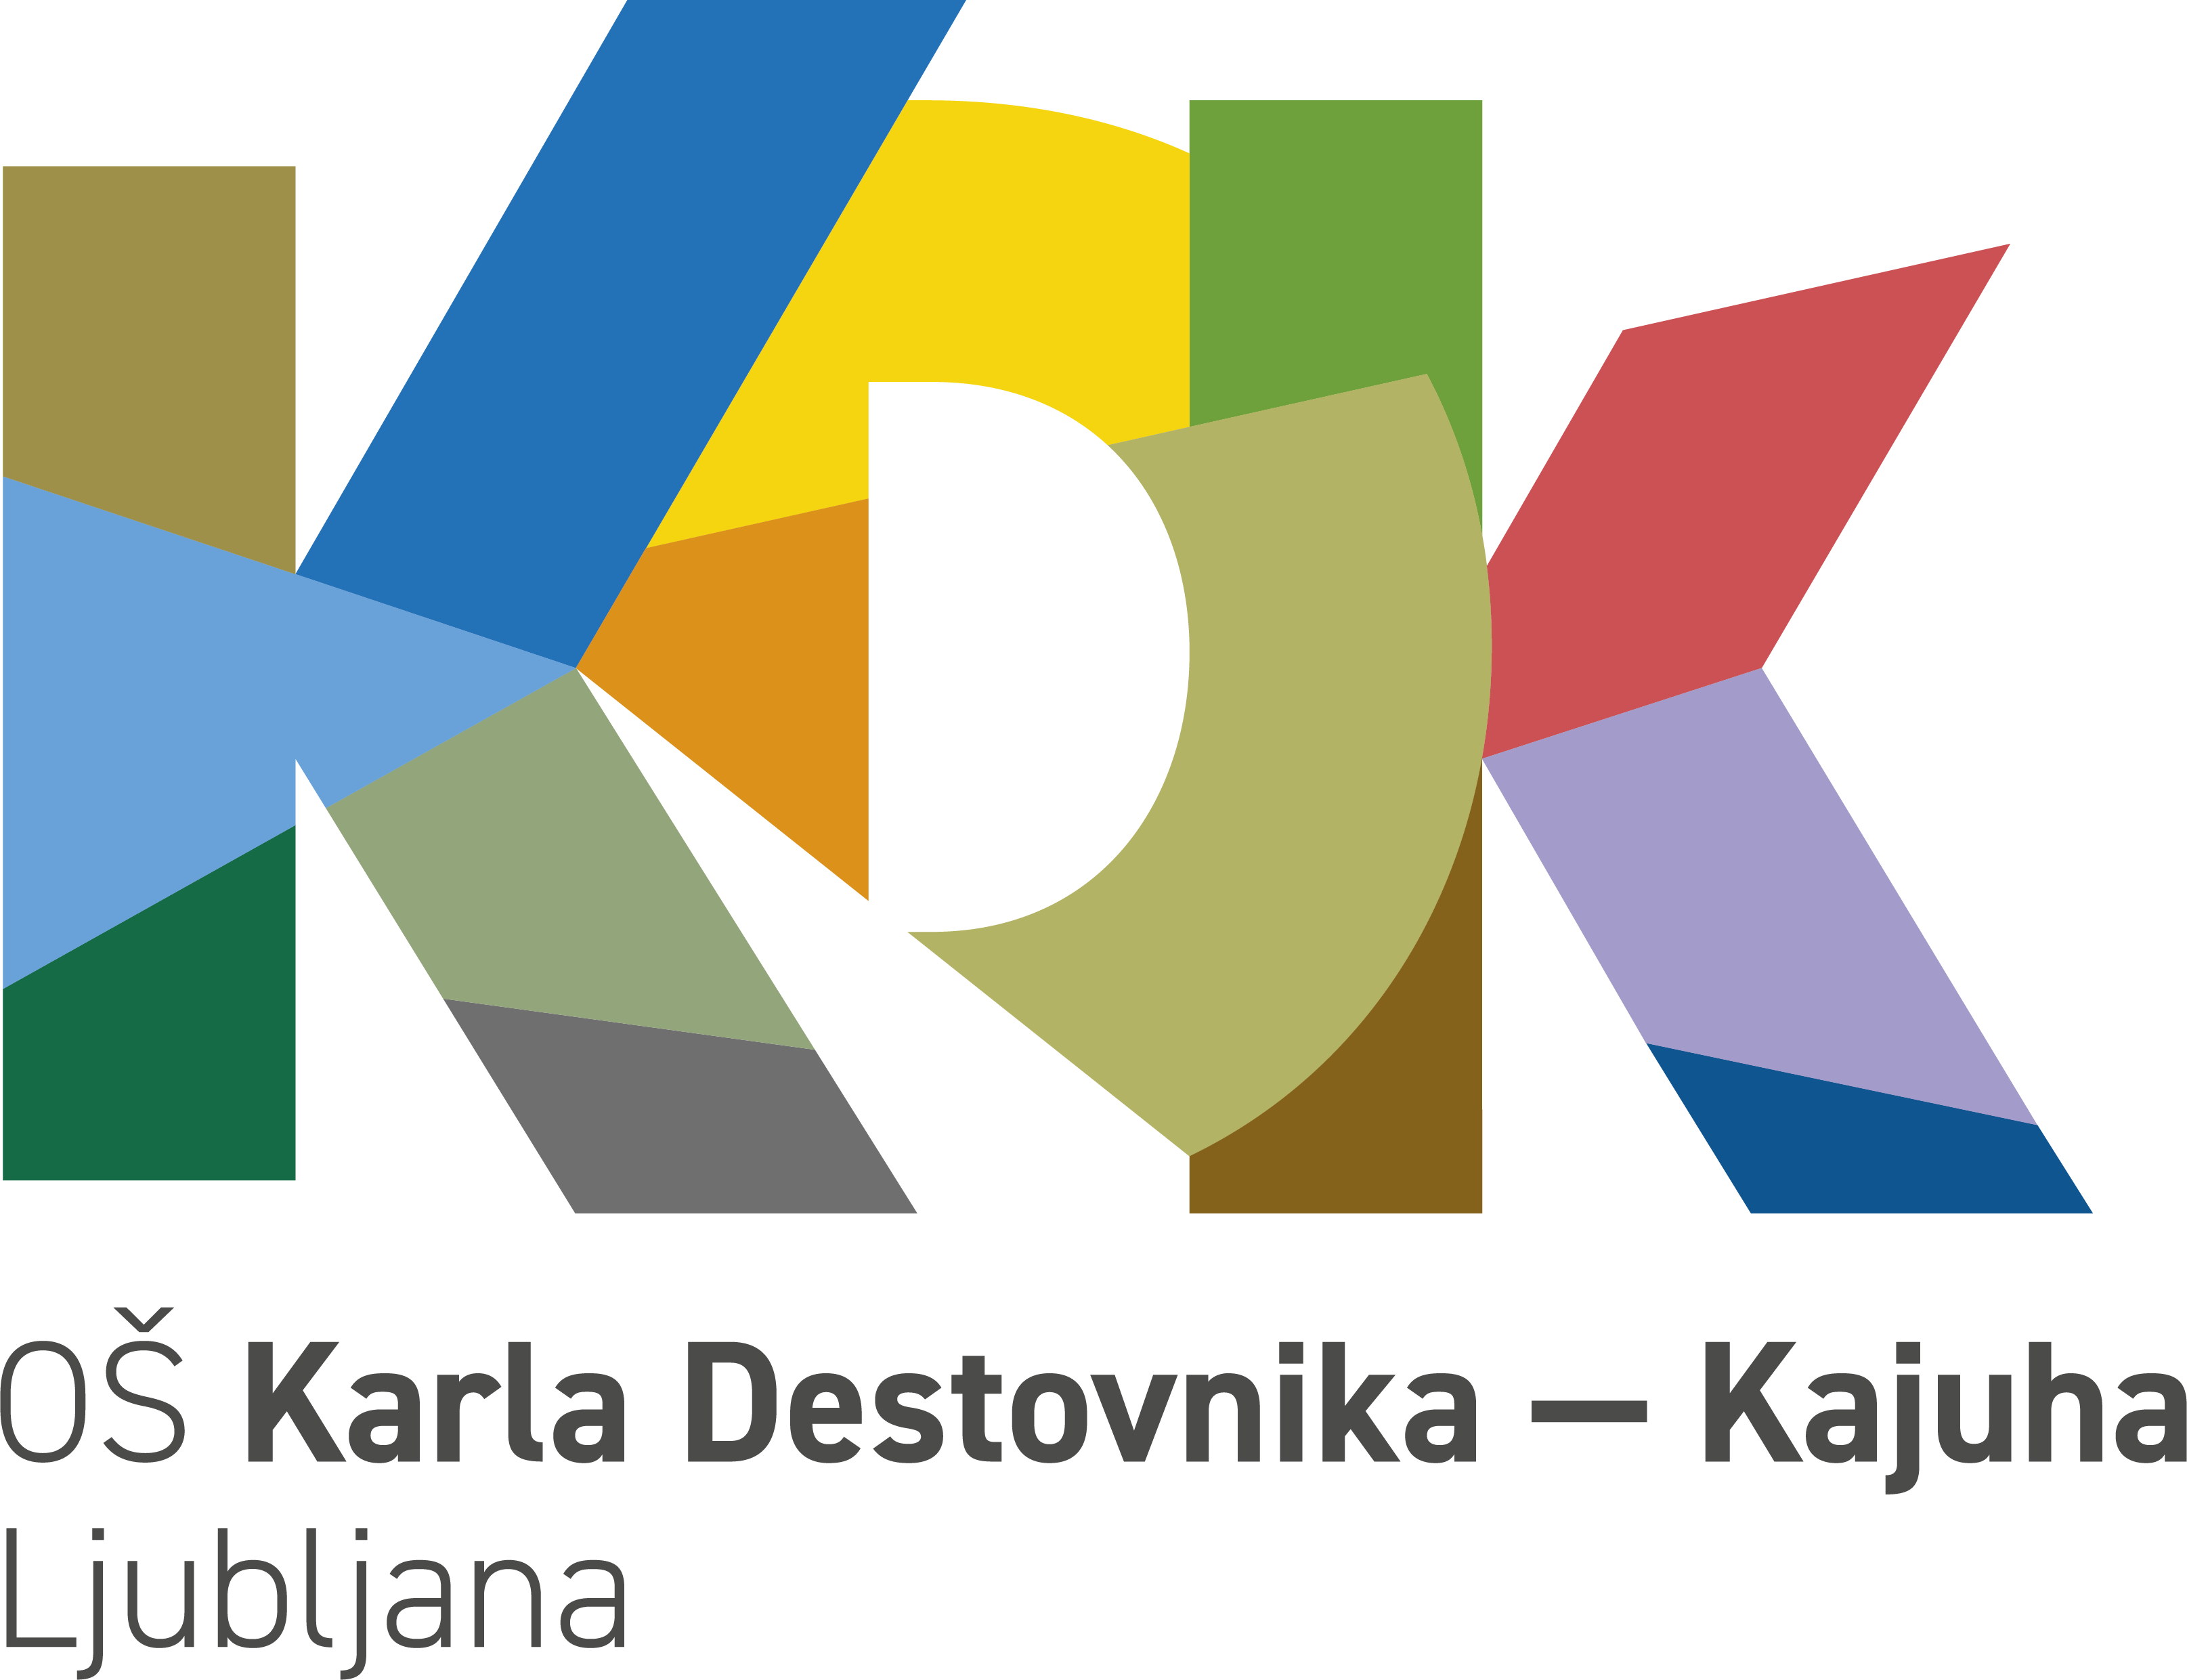 Osnovna šola Karla Destovnika – Kajuha, Ljubljana